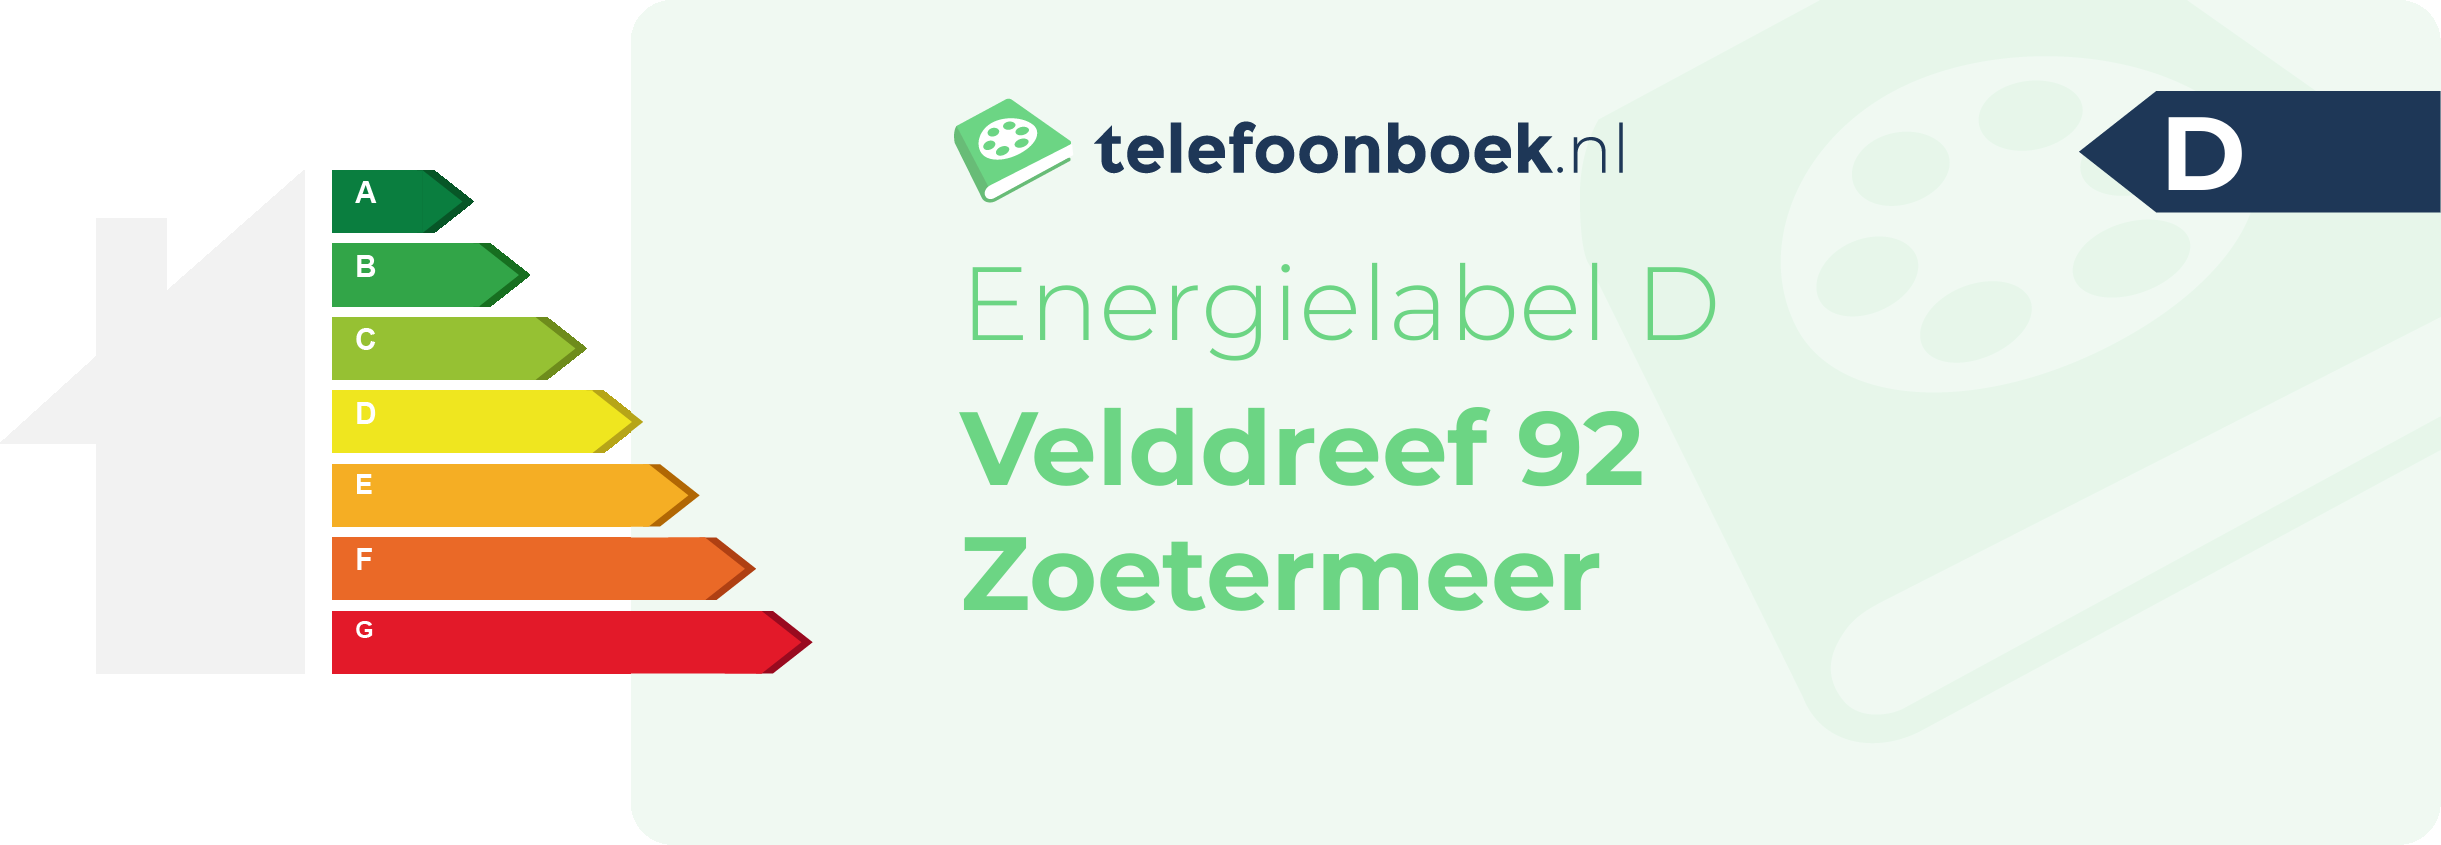 Energielabel Velddreef 92 Zoetermeer